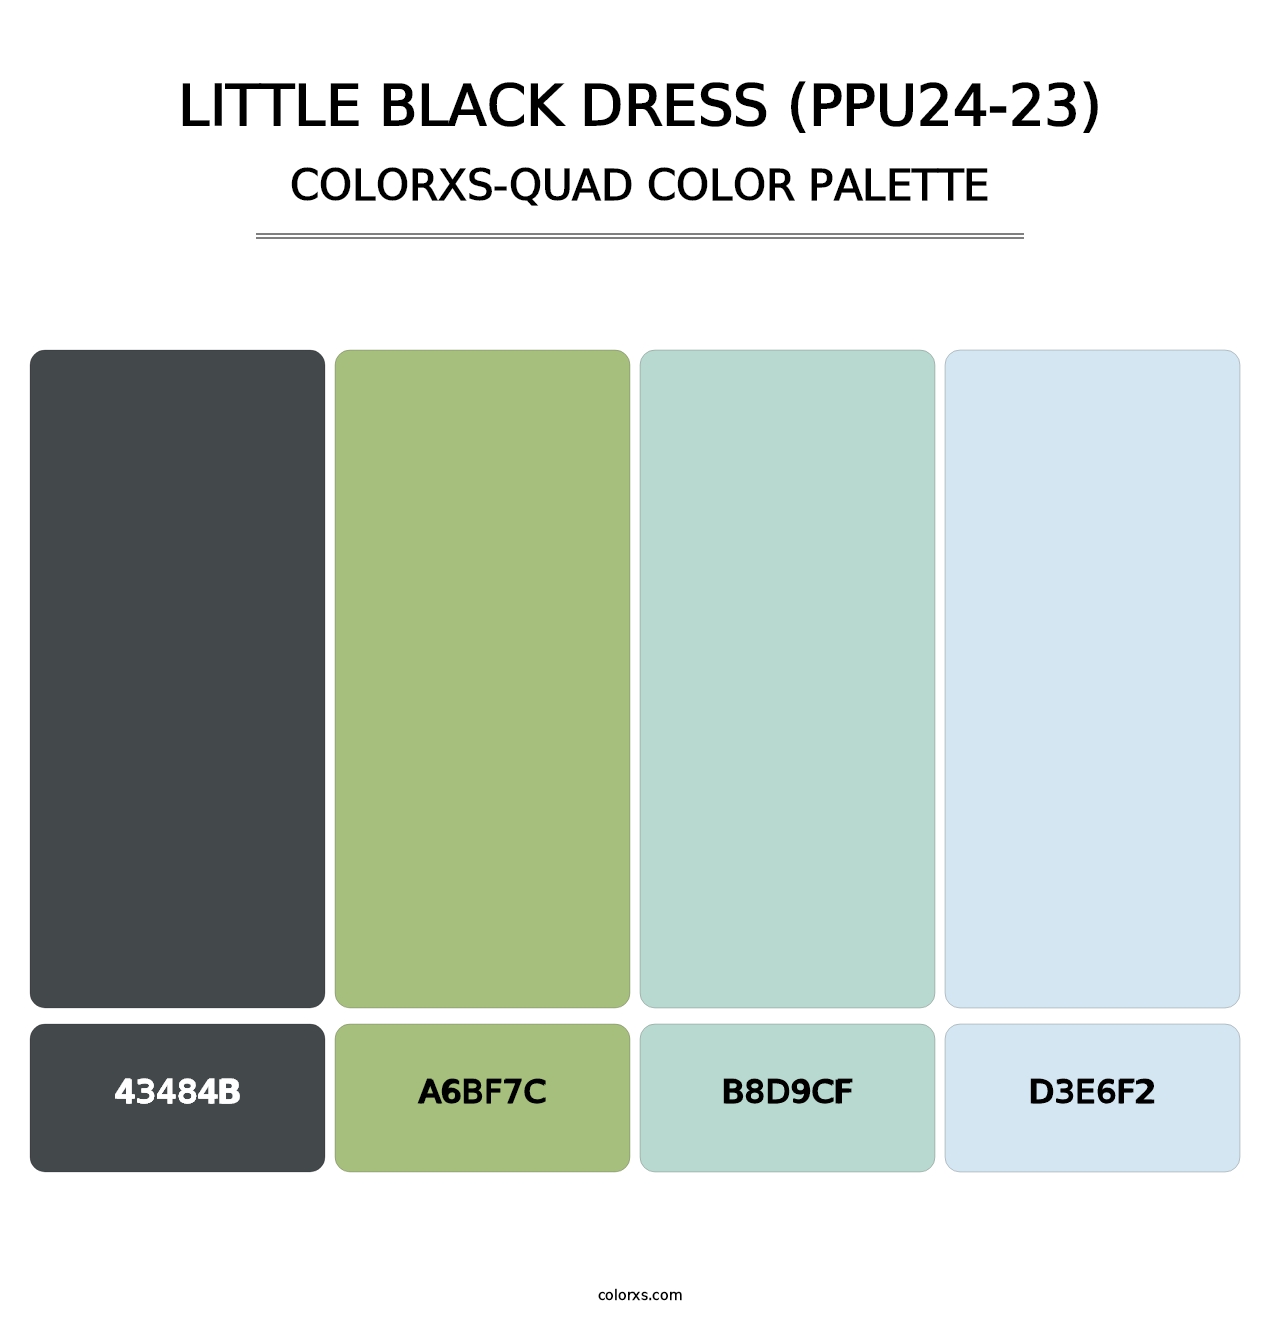 Little Black Dress (PPU24-23) - Colorxs Quad Palette